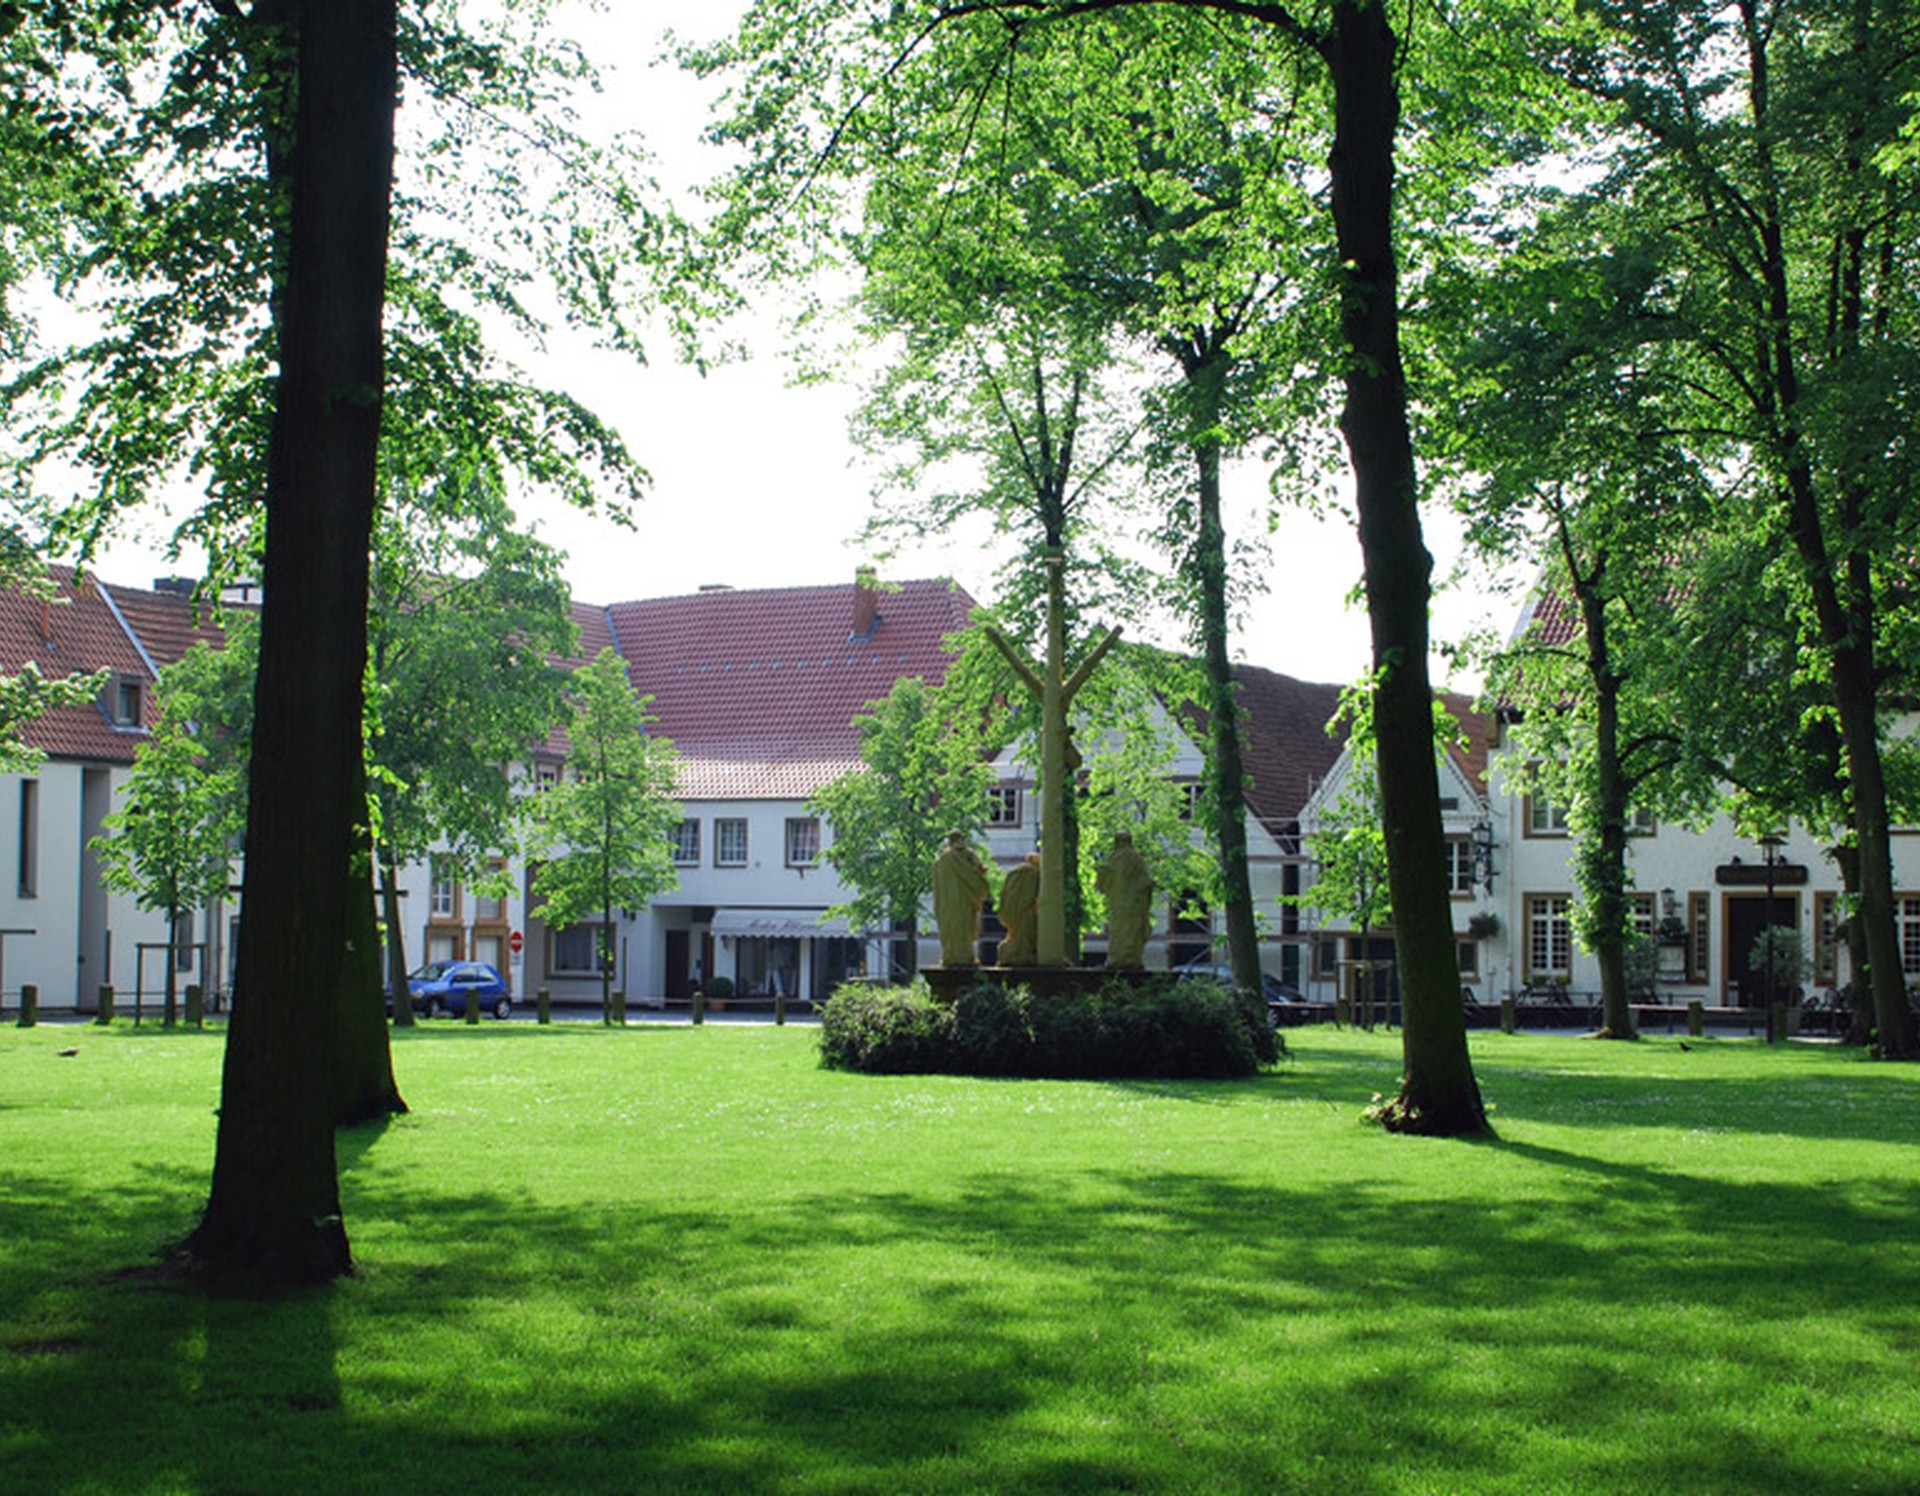 Der Kirchplatz am Kloster Herzebrock. In der Mitte befindet sich eine steinerne Kreuzigungsgruppe. Auf der Wiese des Platzes stehen mehrere Bäume.